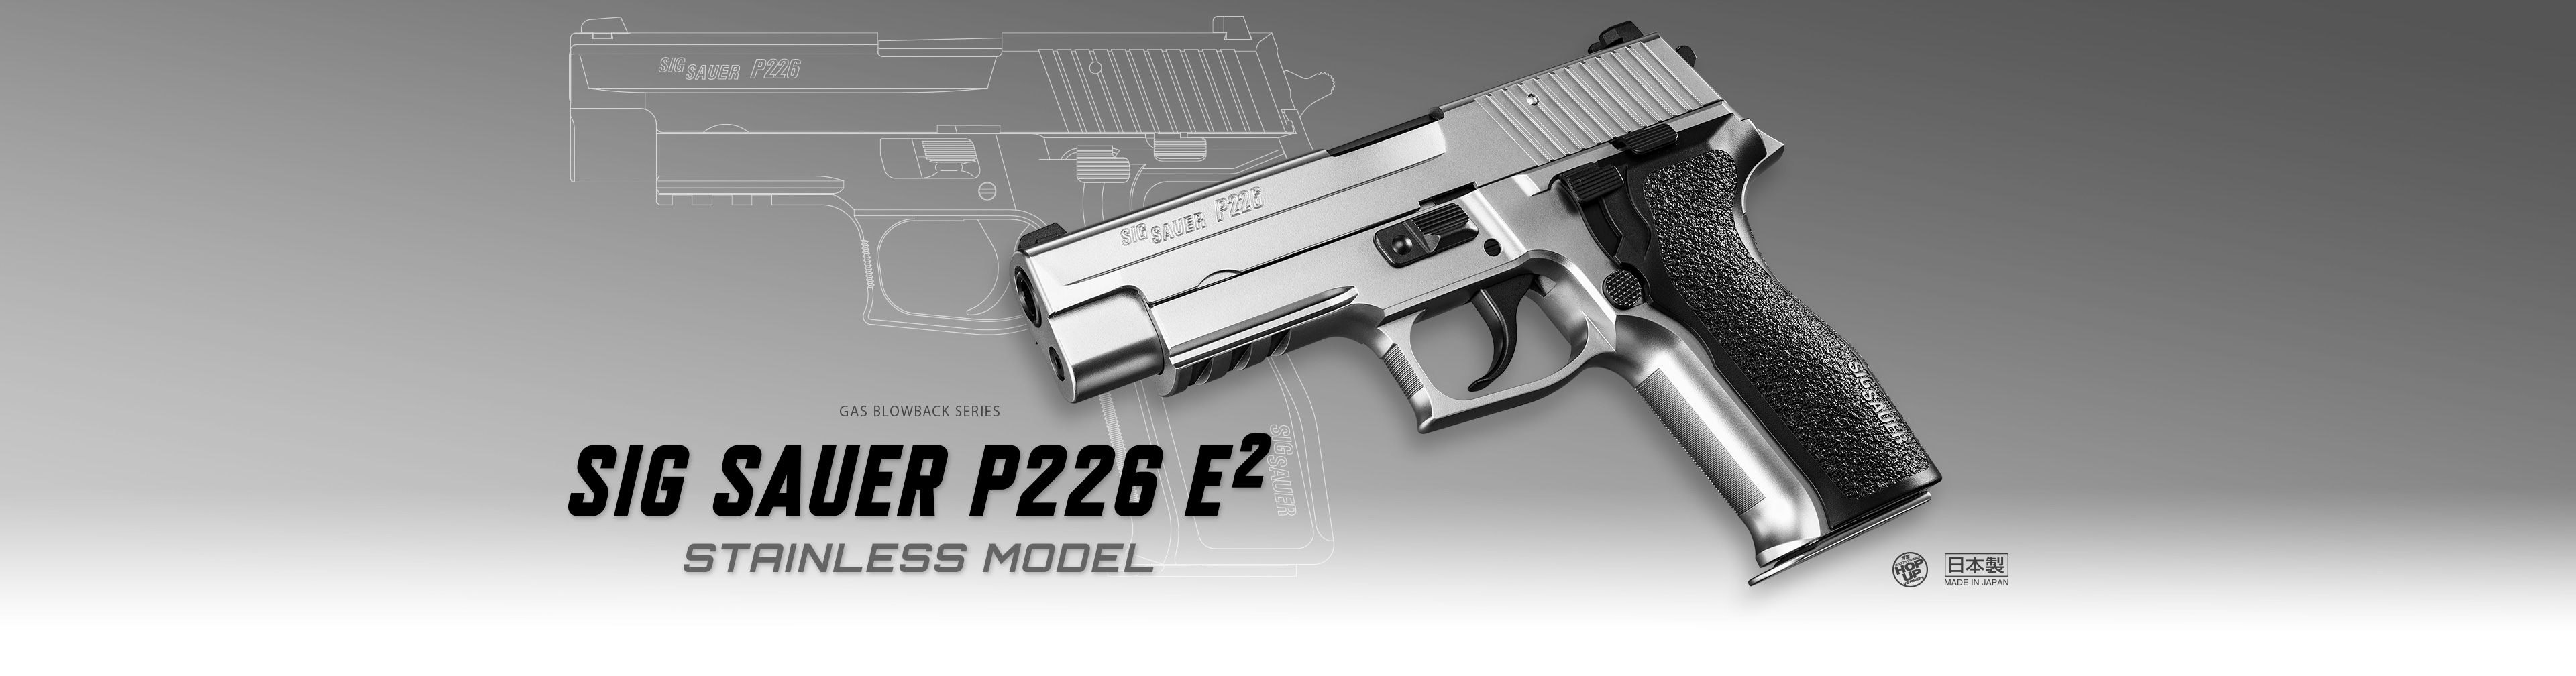 シグ ザウエル P226 E2 ステンレスモデル ガスブローバック 東京マルイ エアソフトガン情報サイト